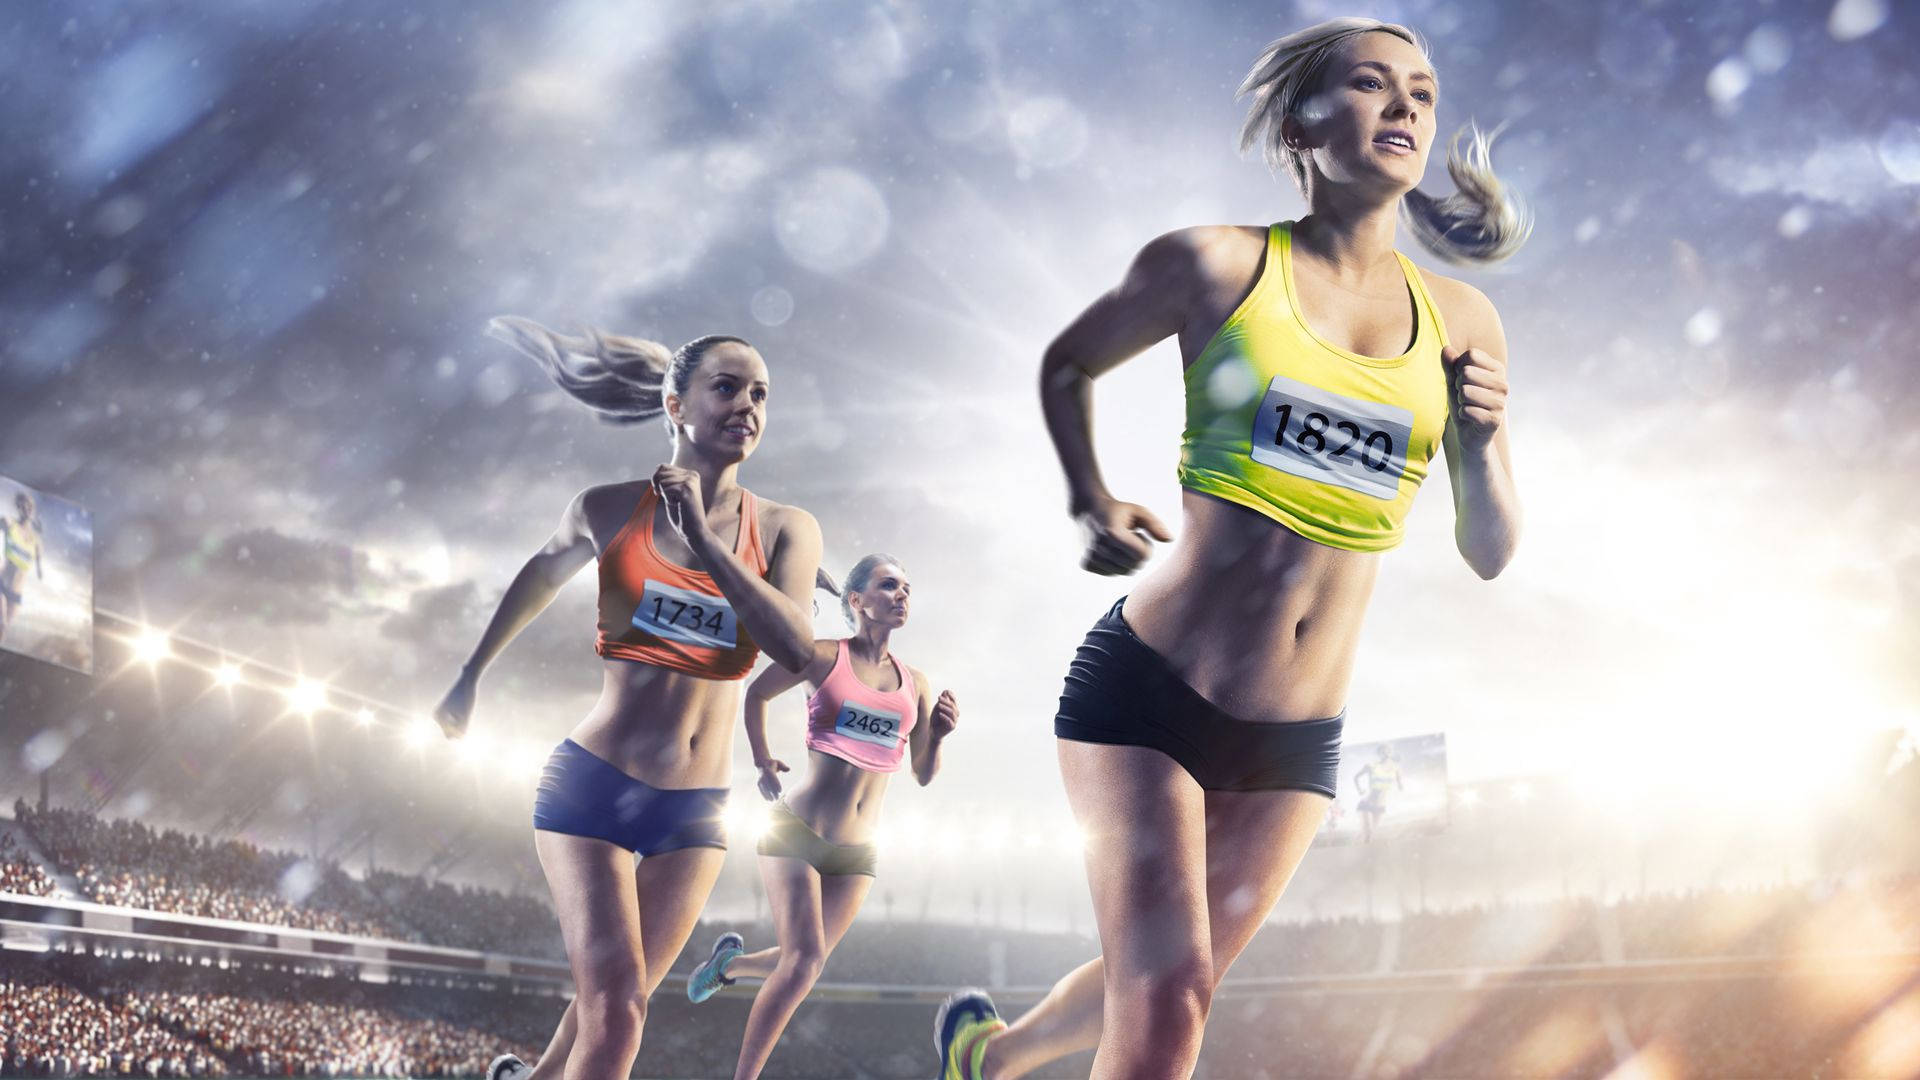 Women's Running Athletics Background